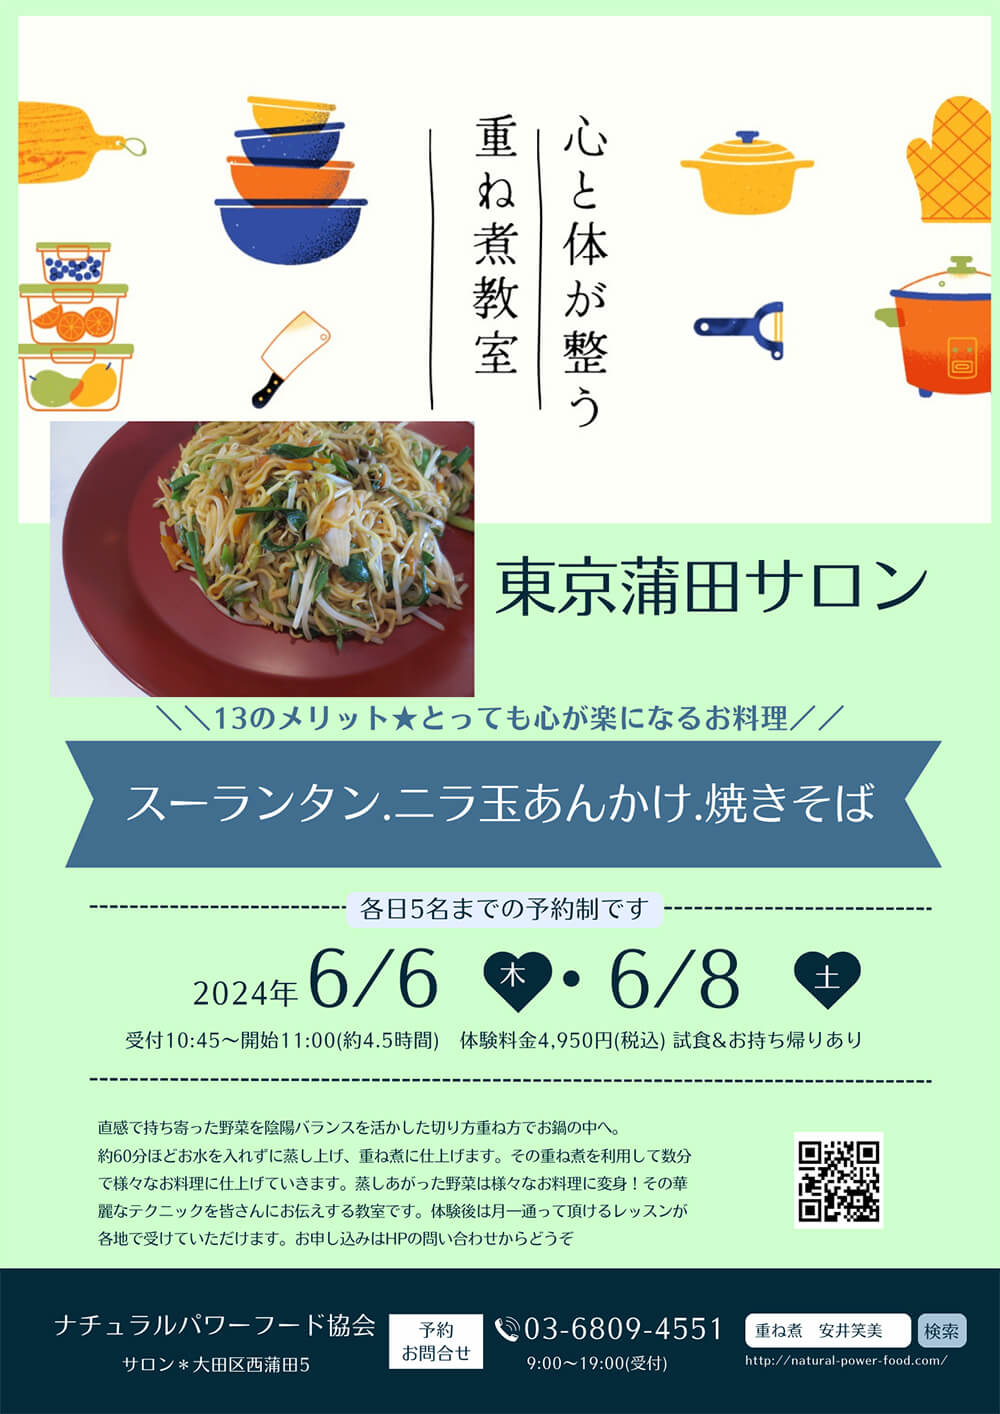 【6月6日 重ね煮・東京サロン】スーランタン、ニラ玉あんかけ、焼きそば